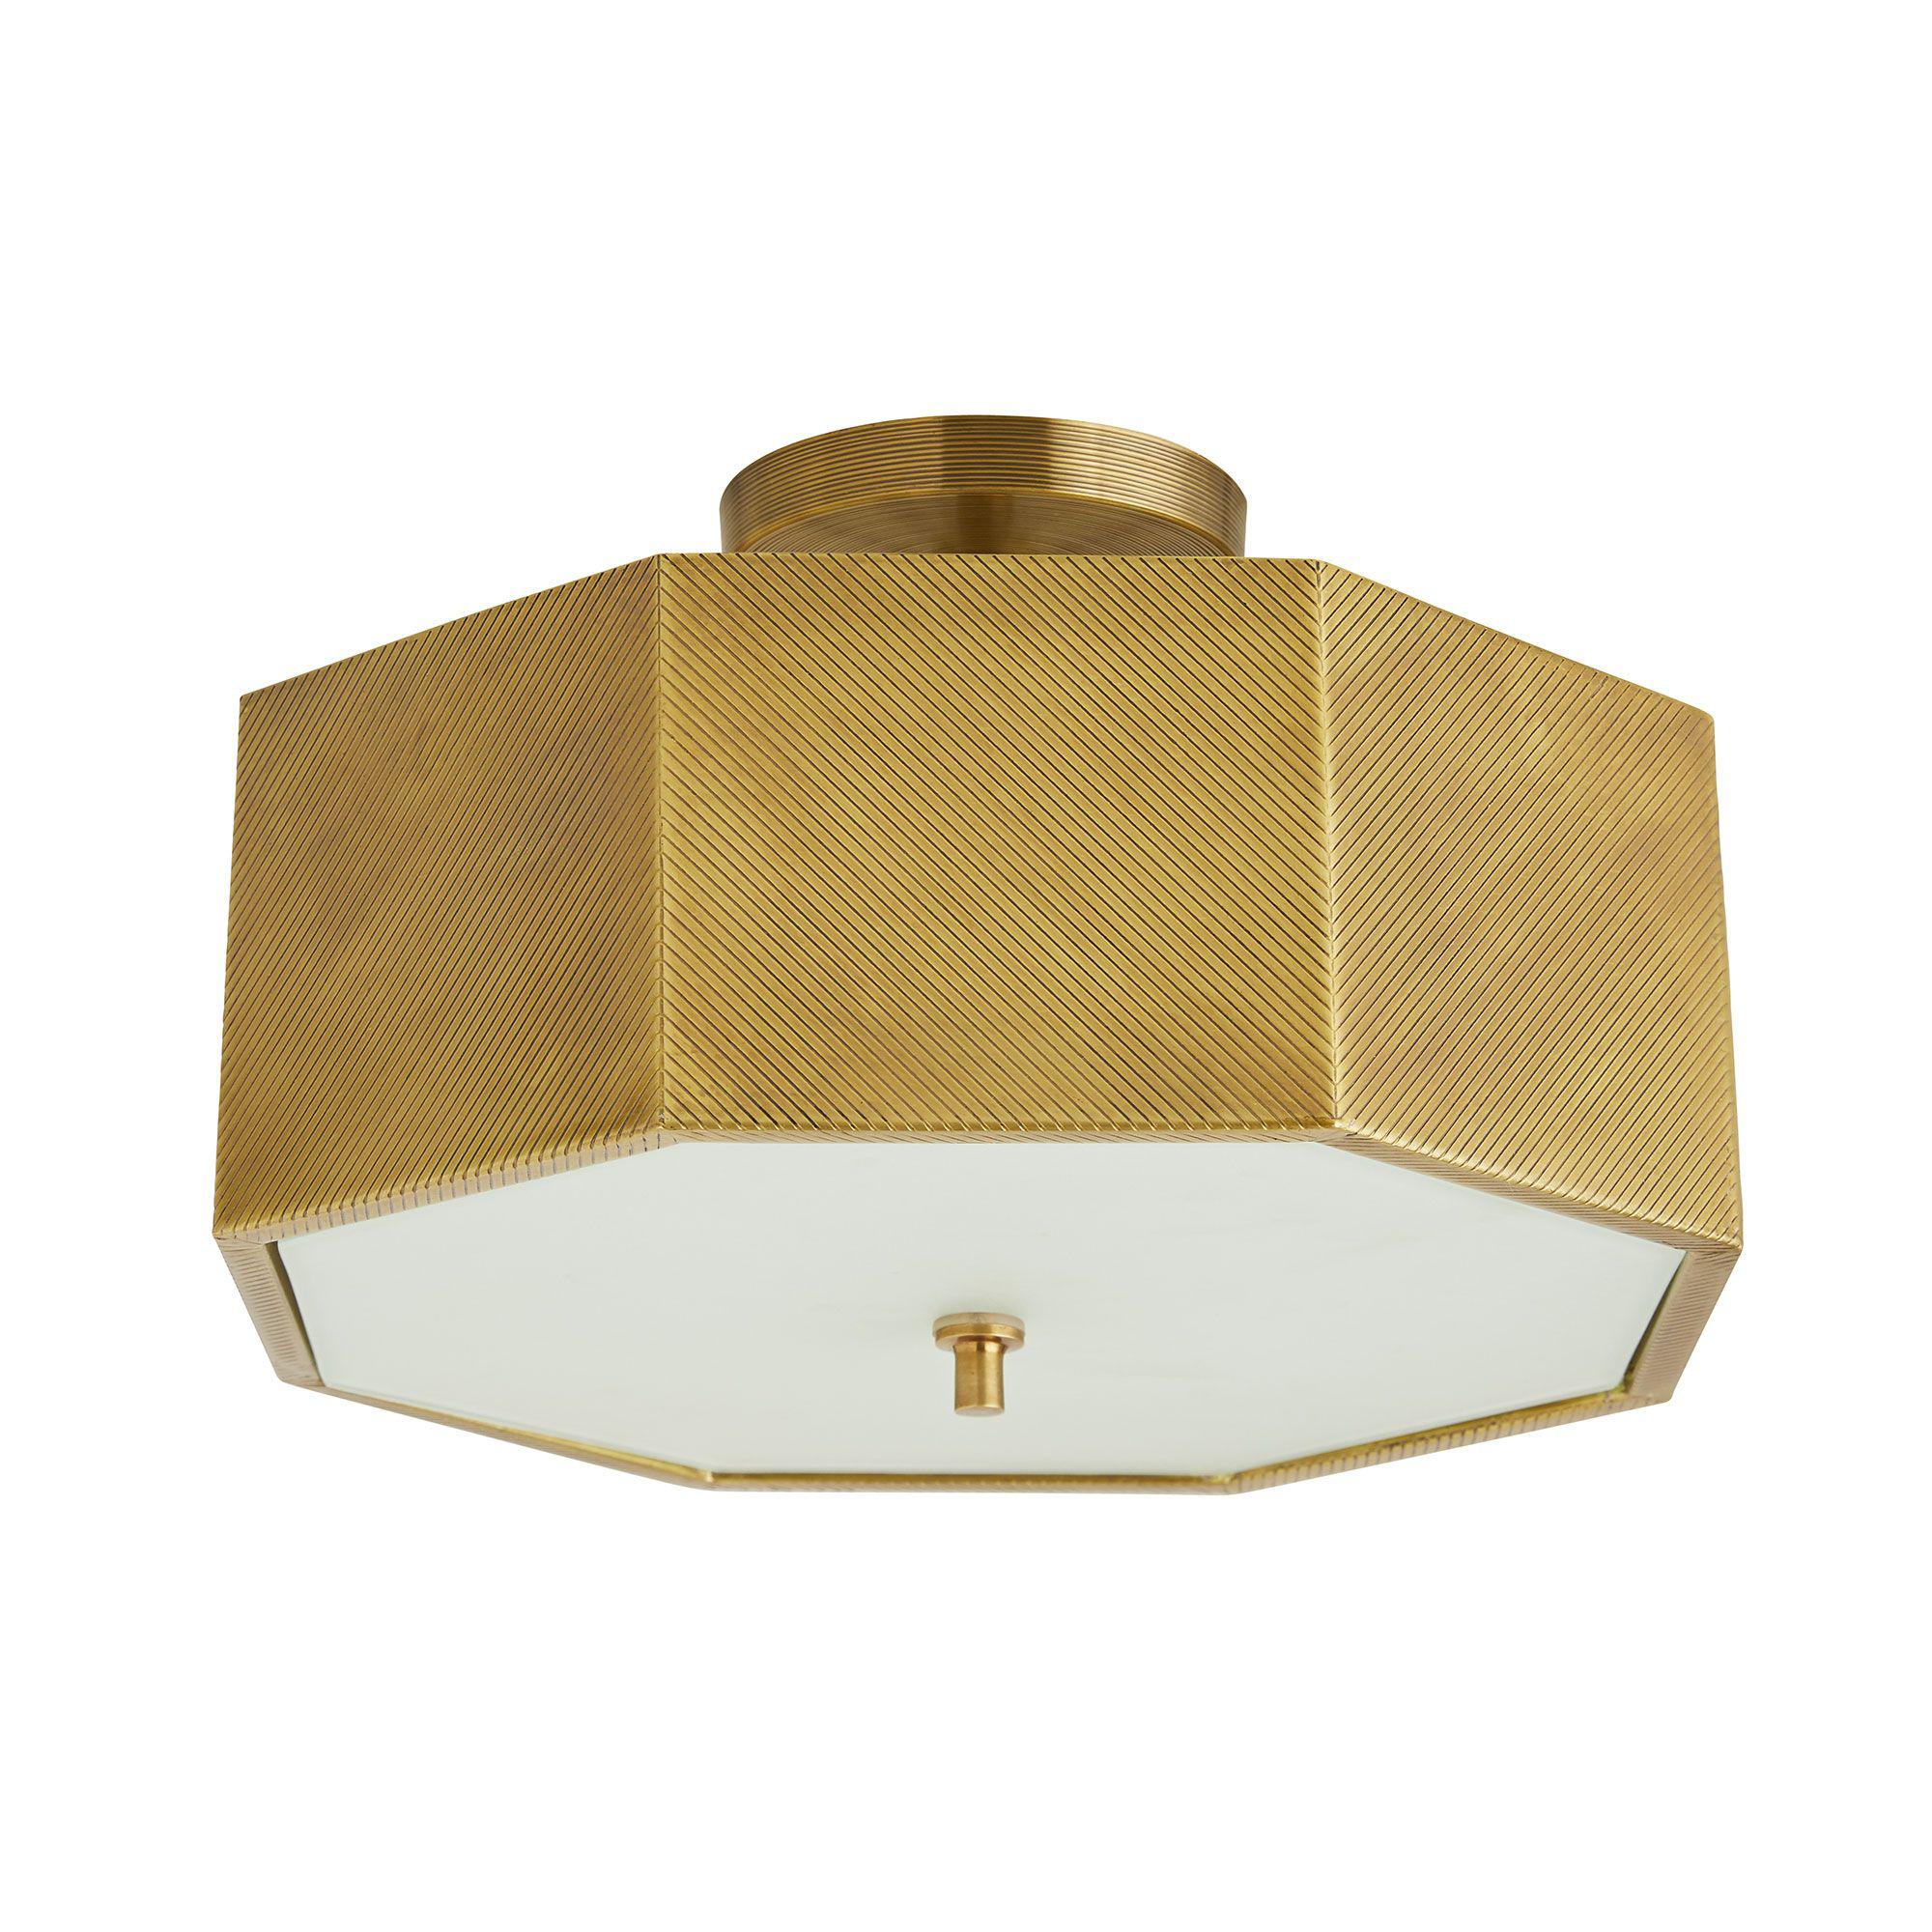 Купить Подвесной светильник Grespan Semi-Flush Mount в интернет-магазине roooms.ru